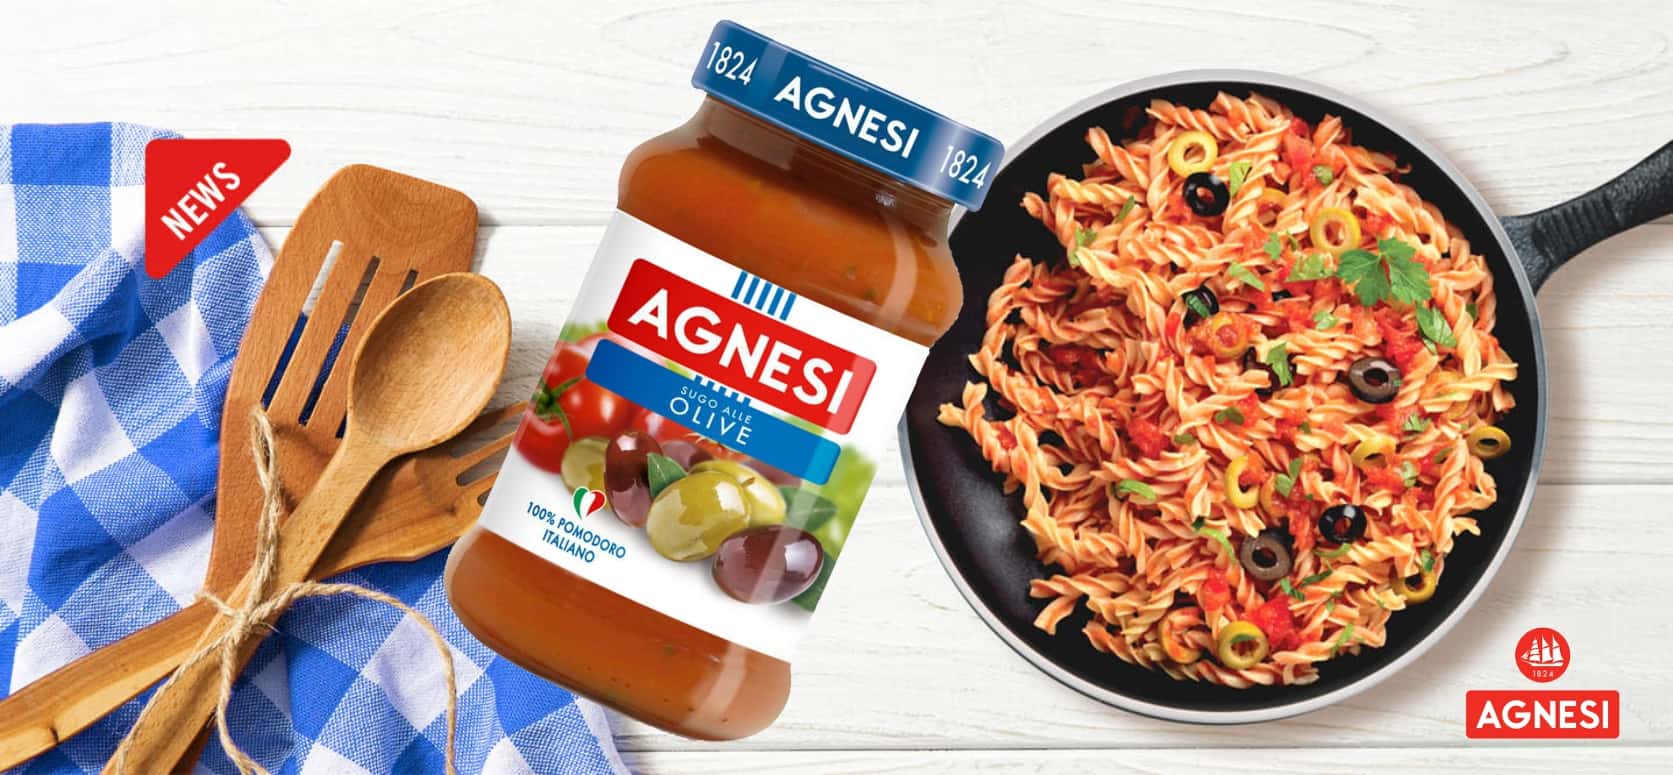 Agnesi義大利蕃茄橄欖麵醬 Agnesi Olive 400g